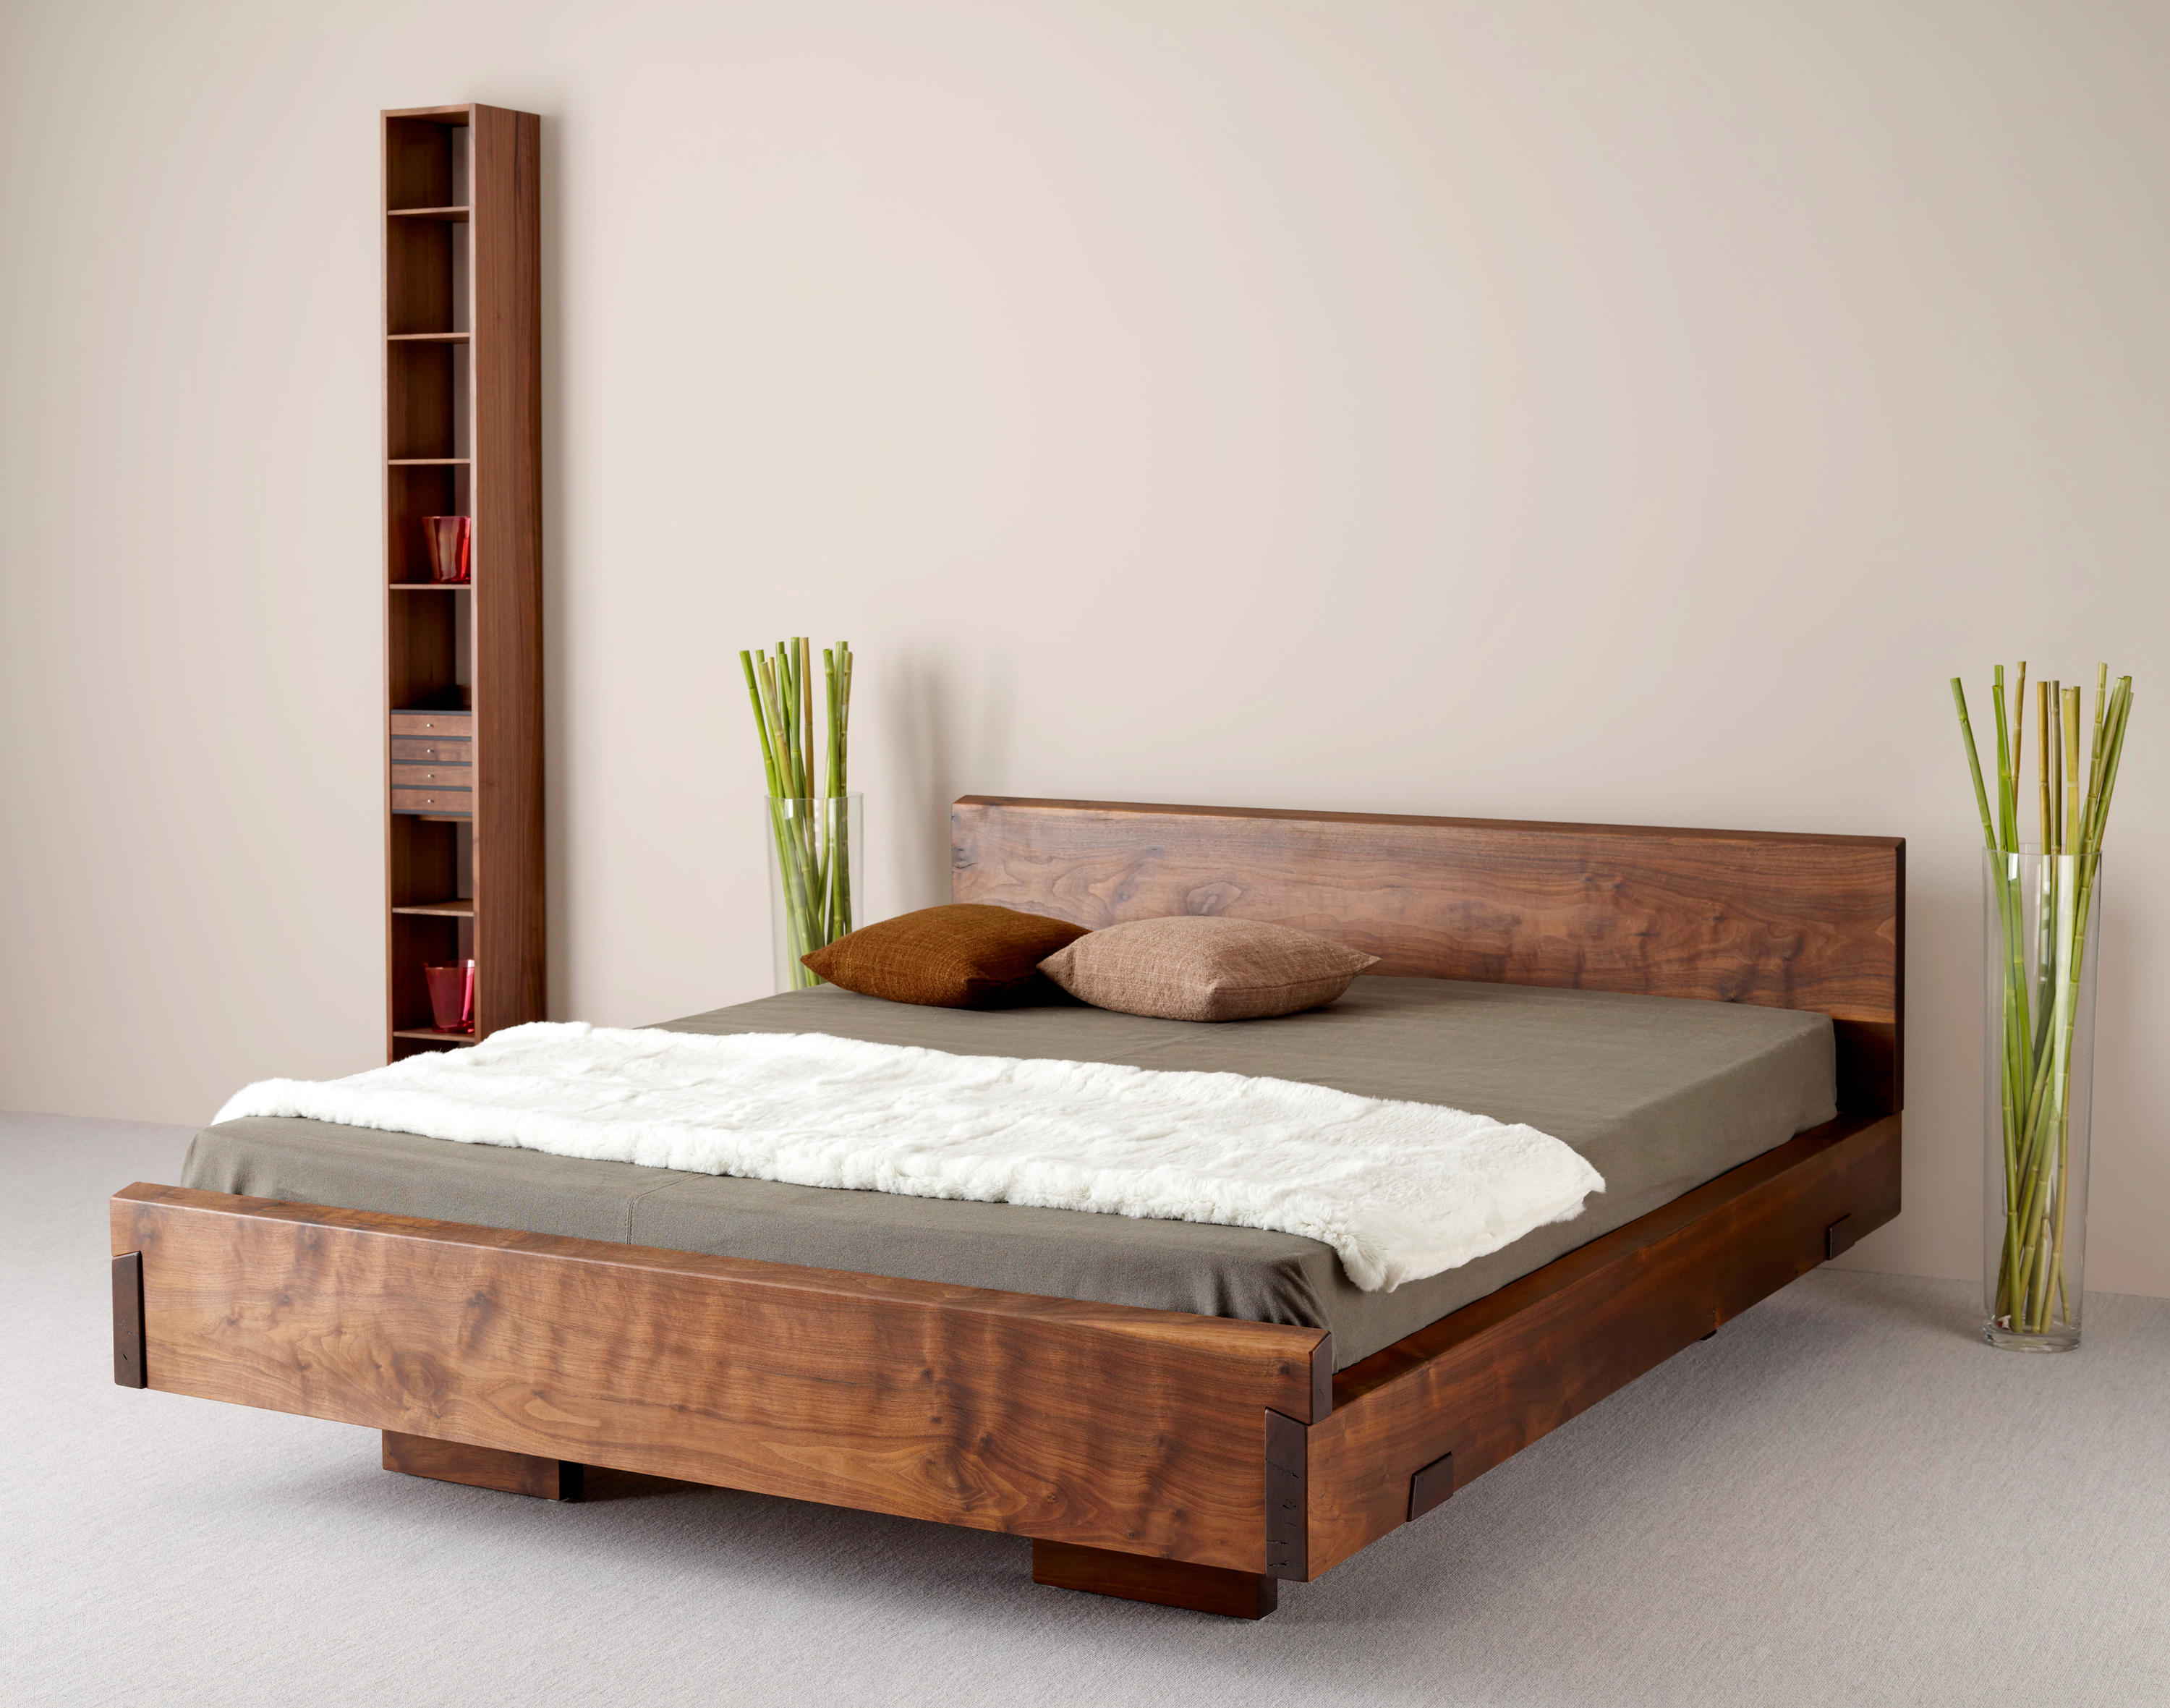 Artwood – производитель деревянных кроватей высокого качества